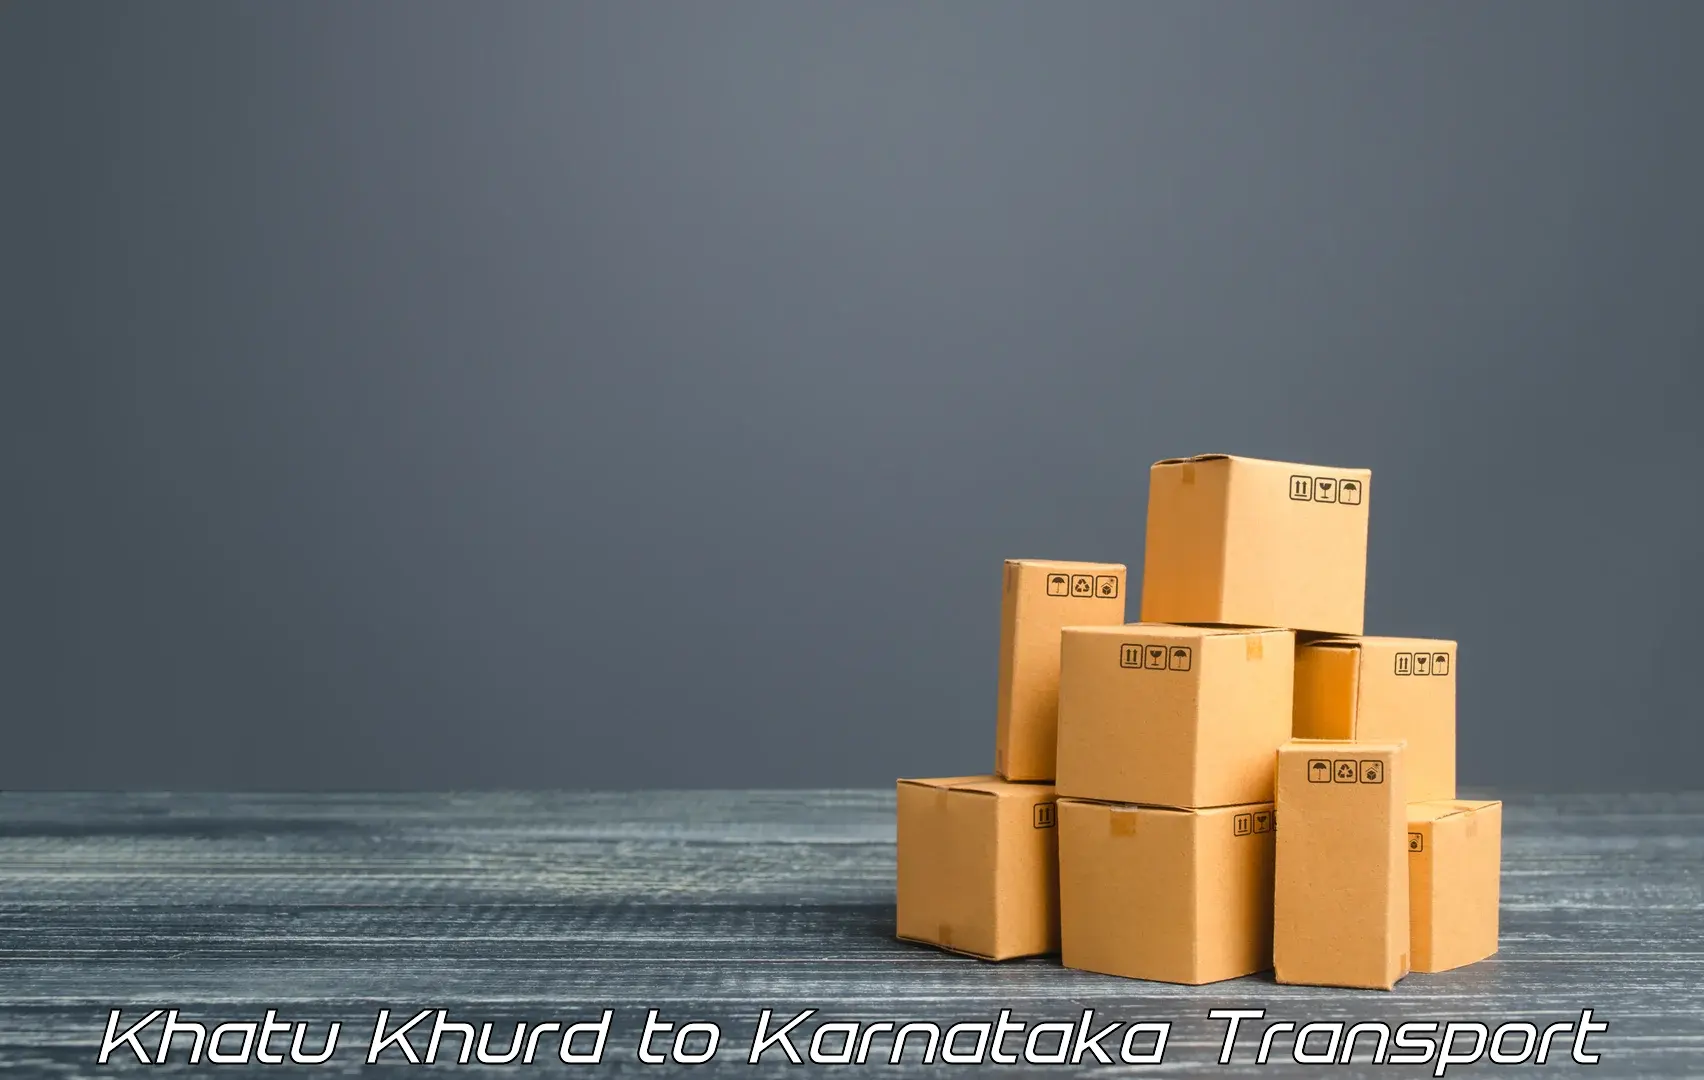 Truck transport companies in India Khatu Khurd to Kundapura